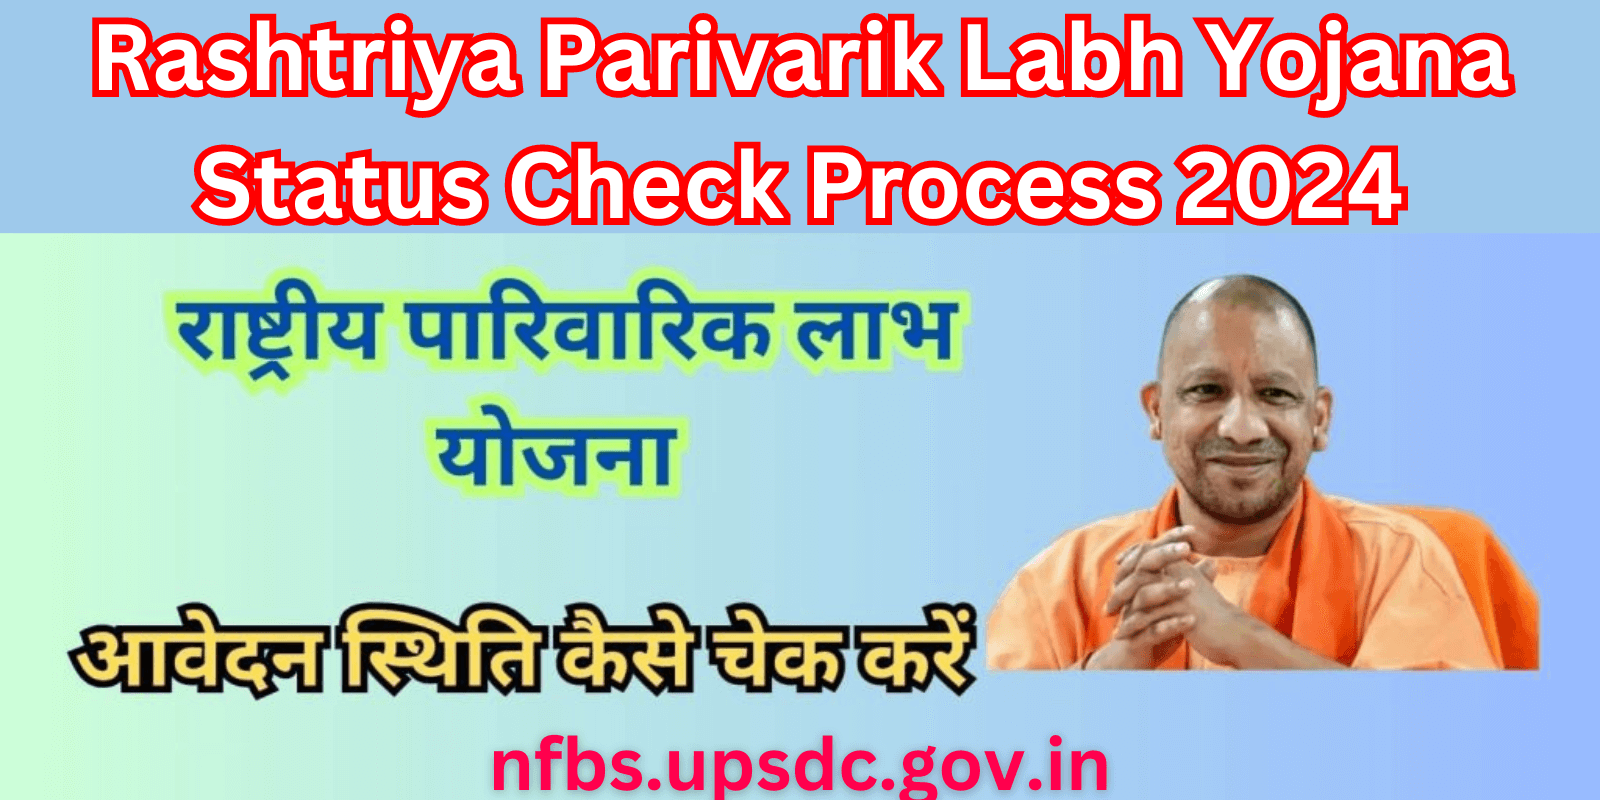 Rashtriya Parivarik Labh Yojana Status Check Process 2024